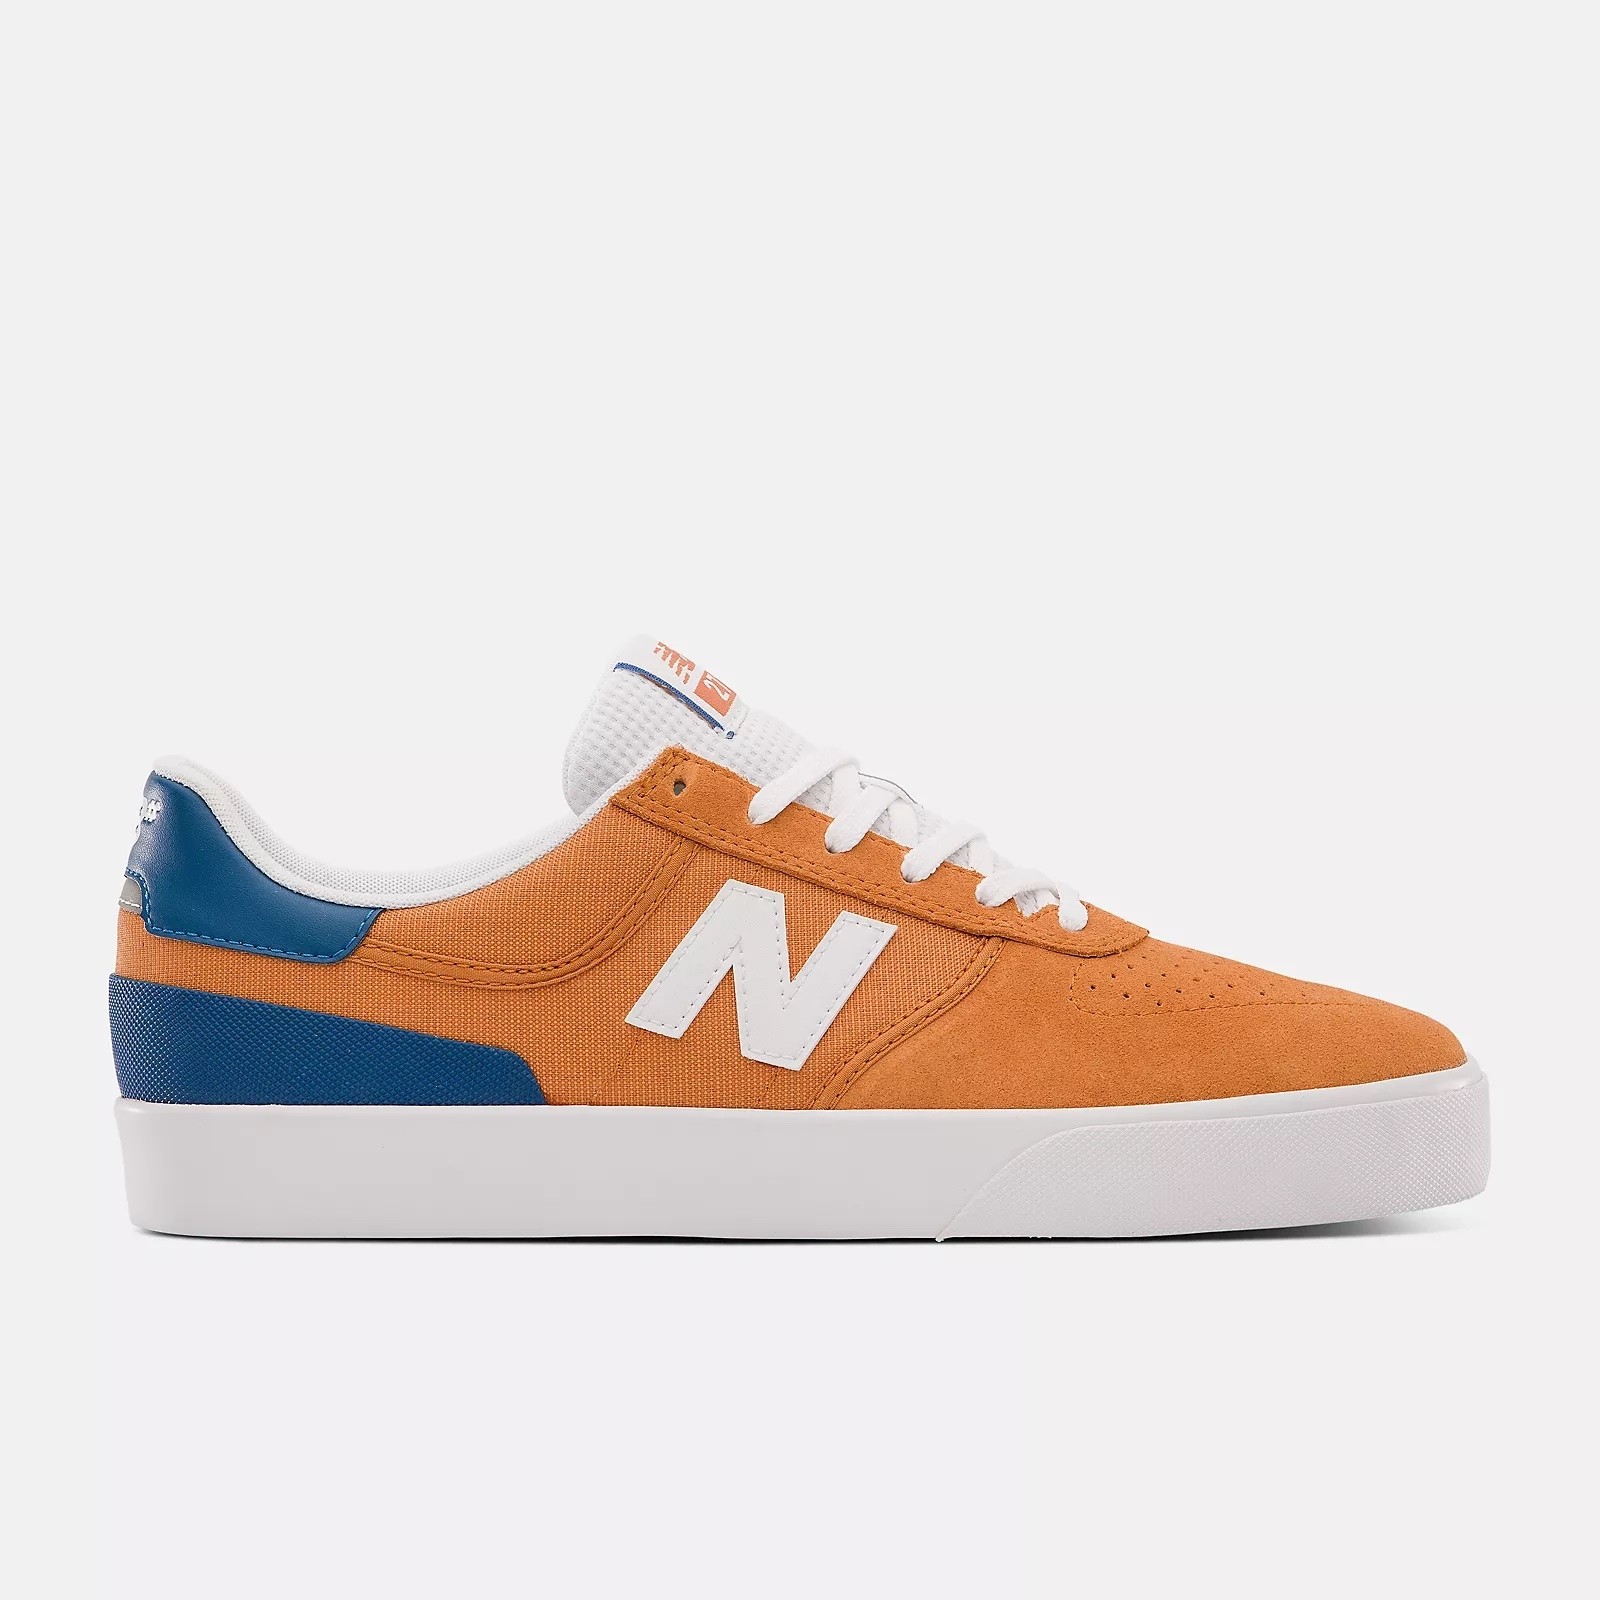 New Balance Numeric 272 Numeric (Orange/Blue) Men's Shoes Skate Shoes ...